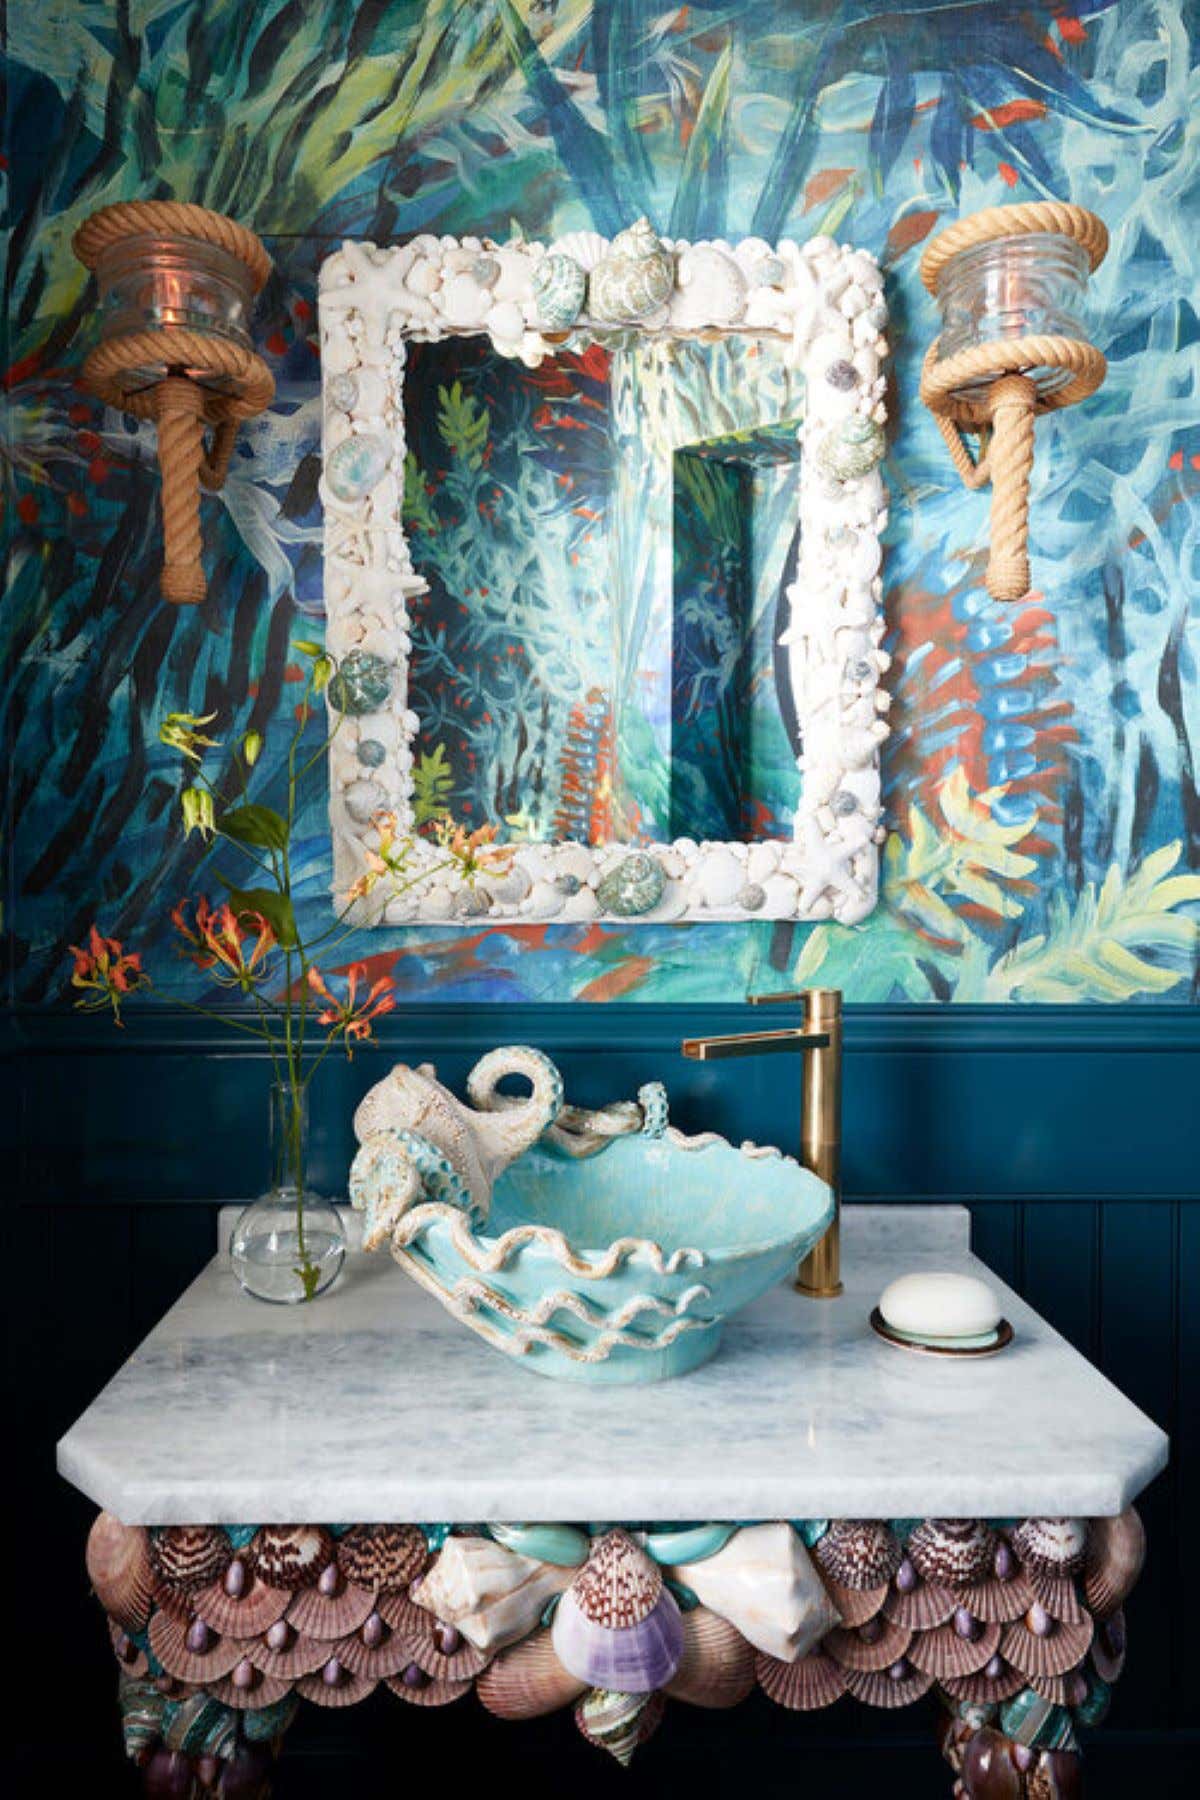 Coastal Bathroom